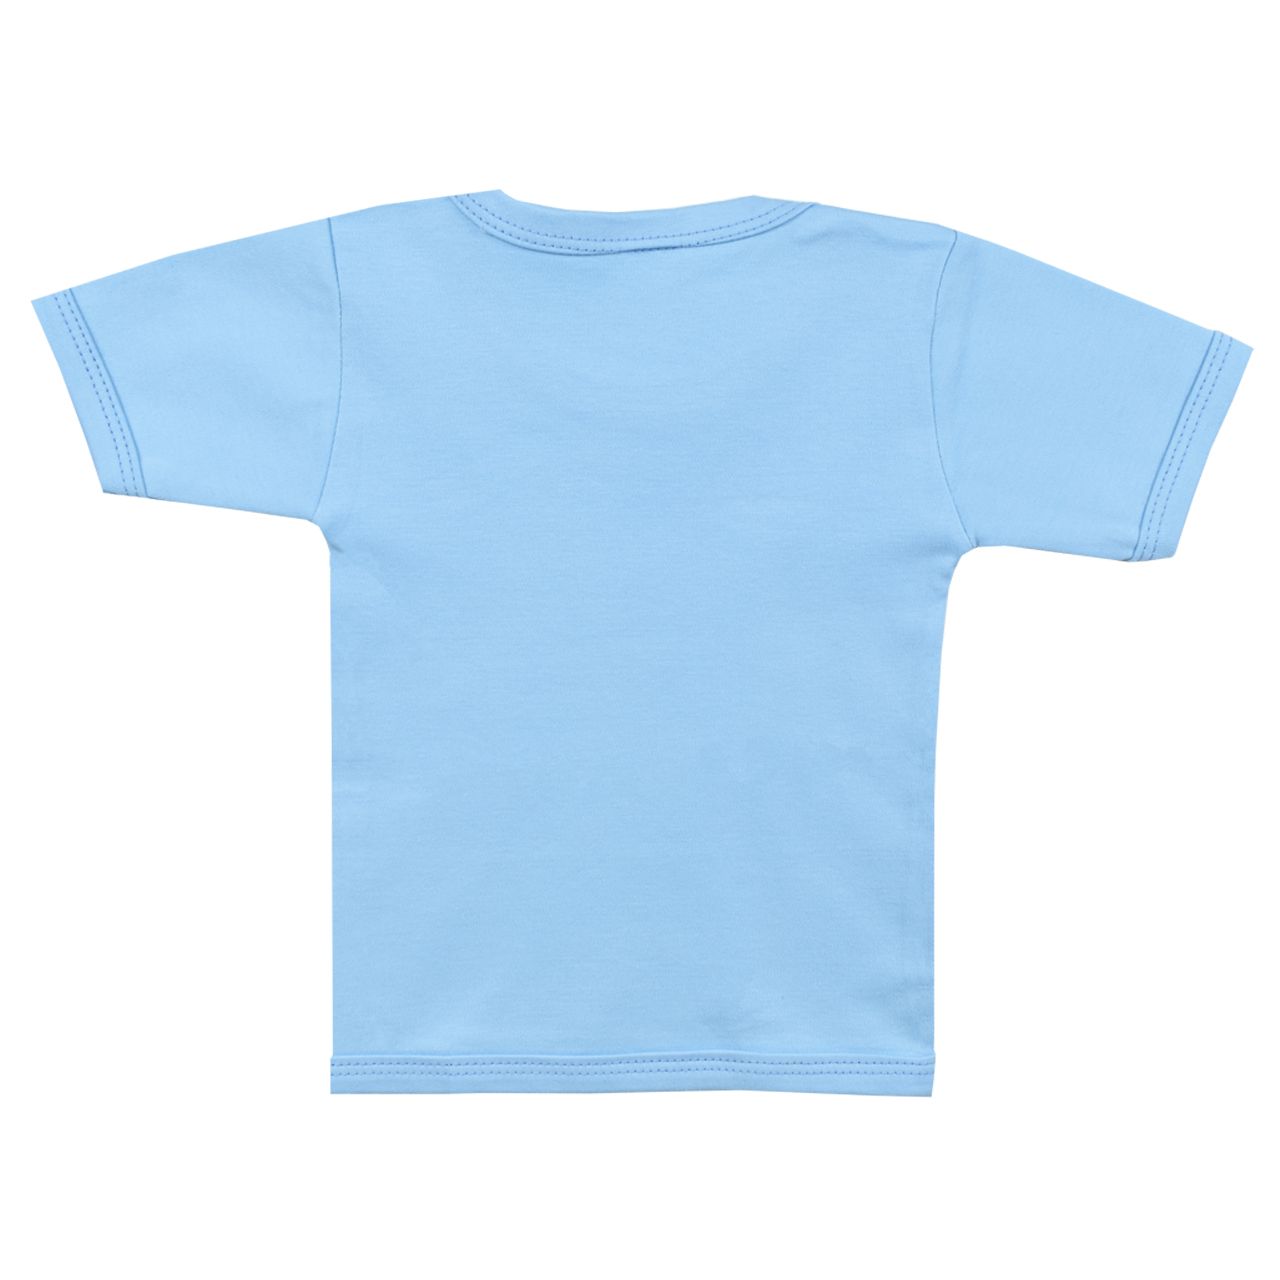 ست تی شرت و شلوار نوزادی اسپیکو مدل کاج 2 -  - 2